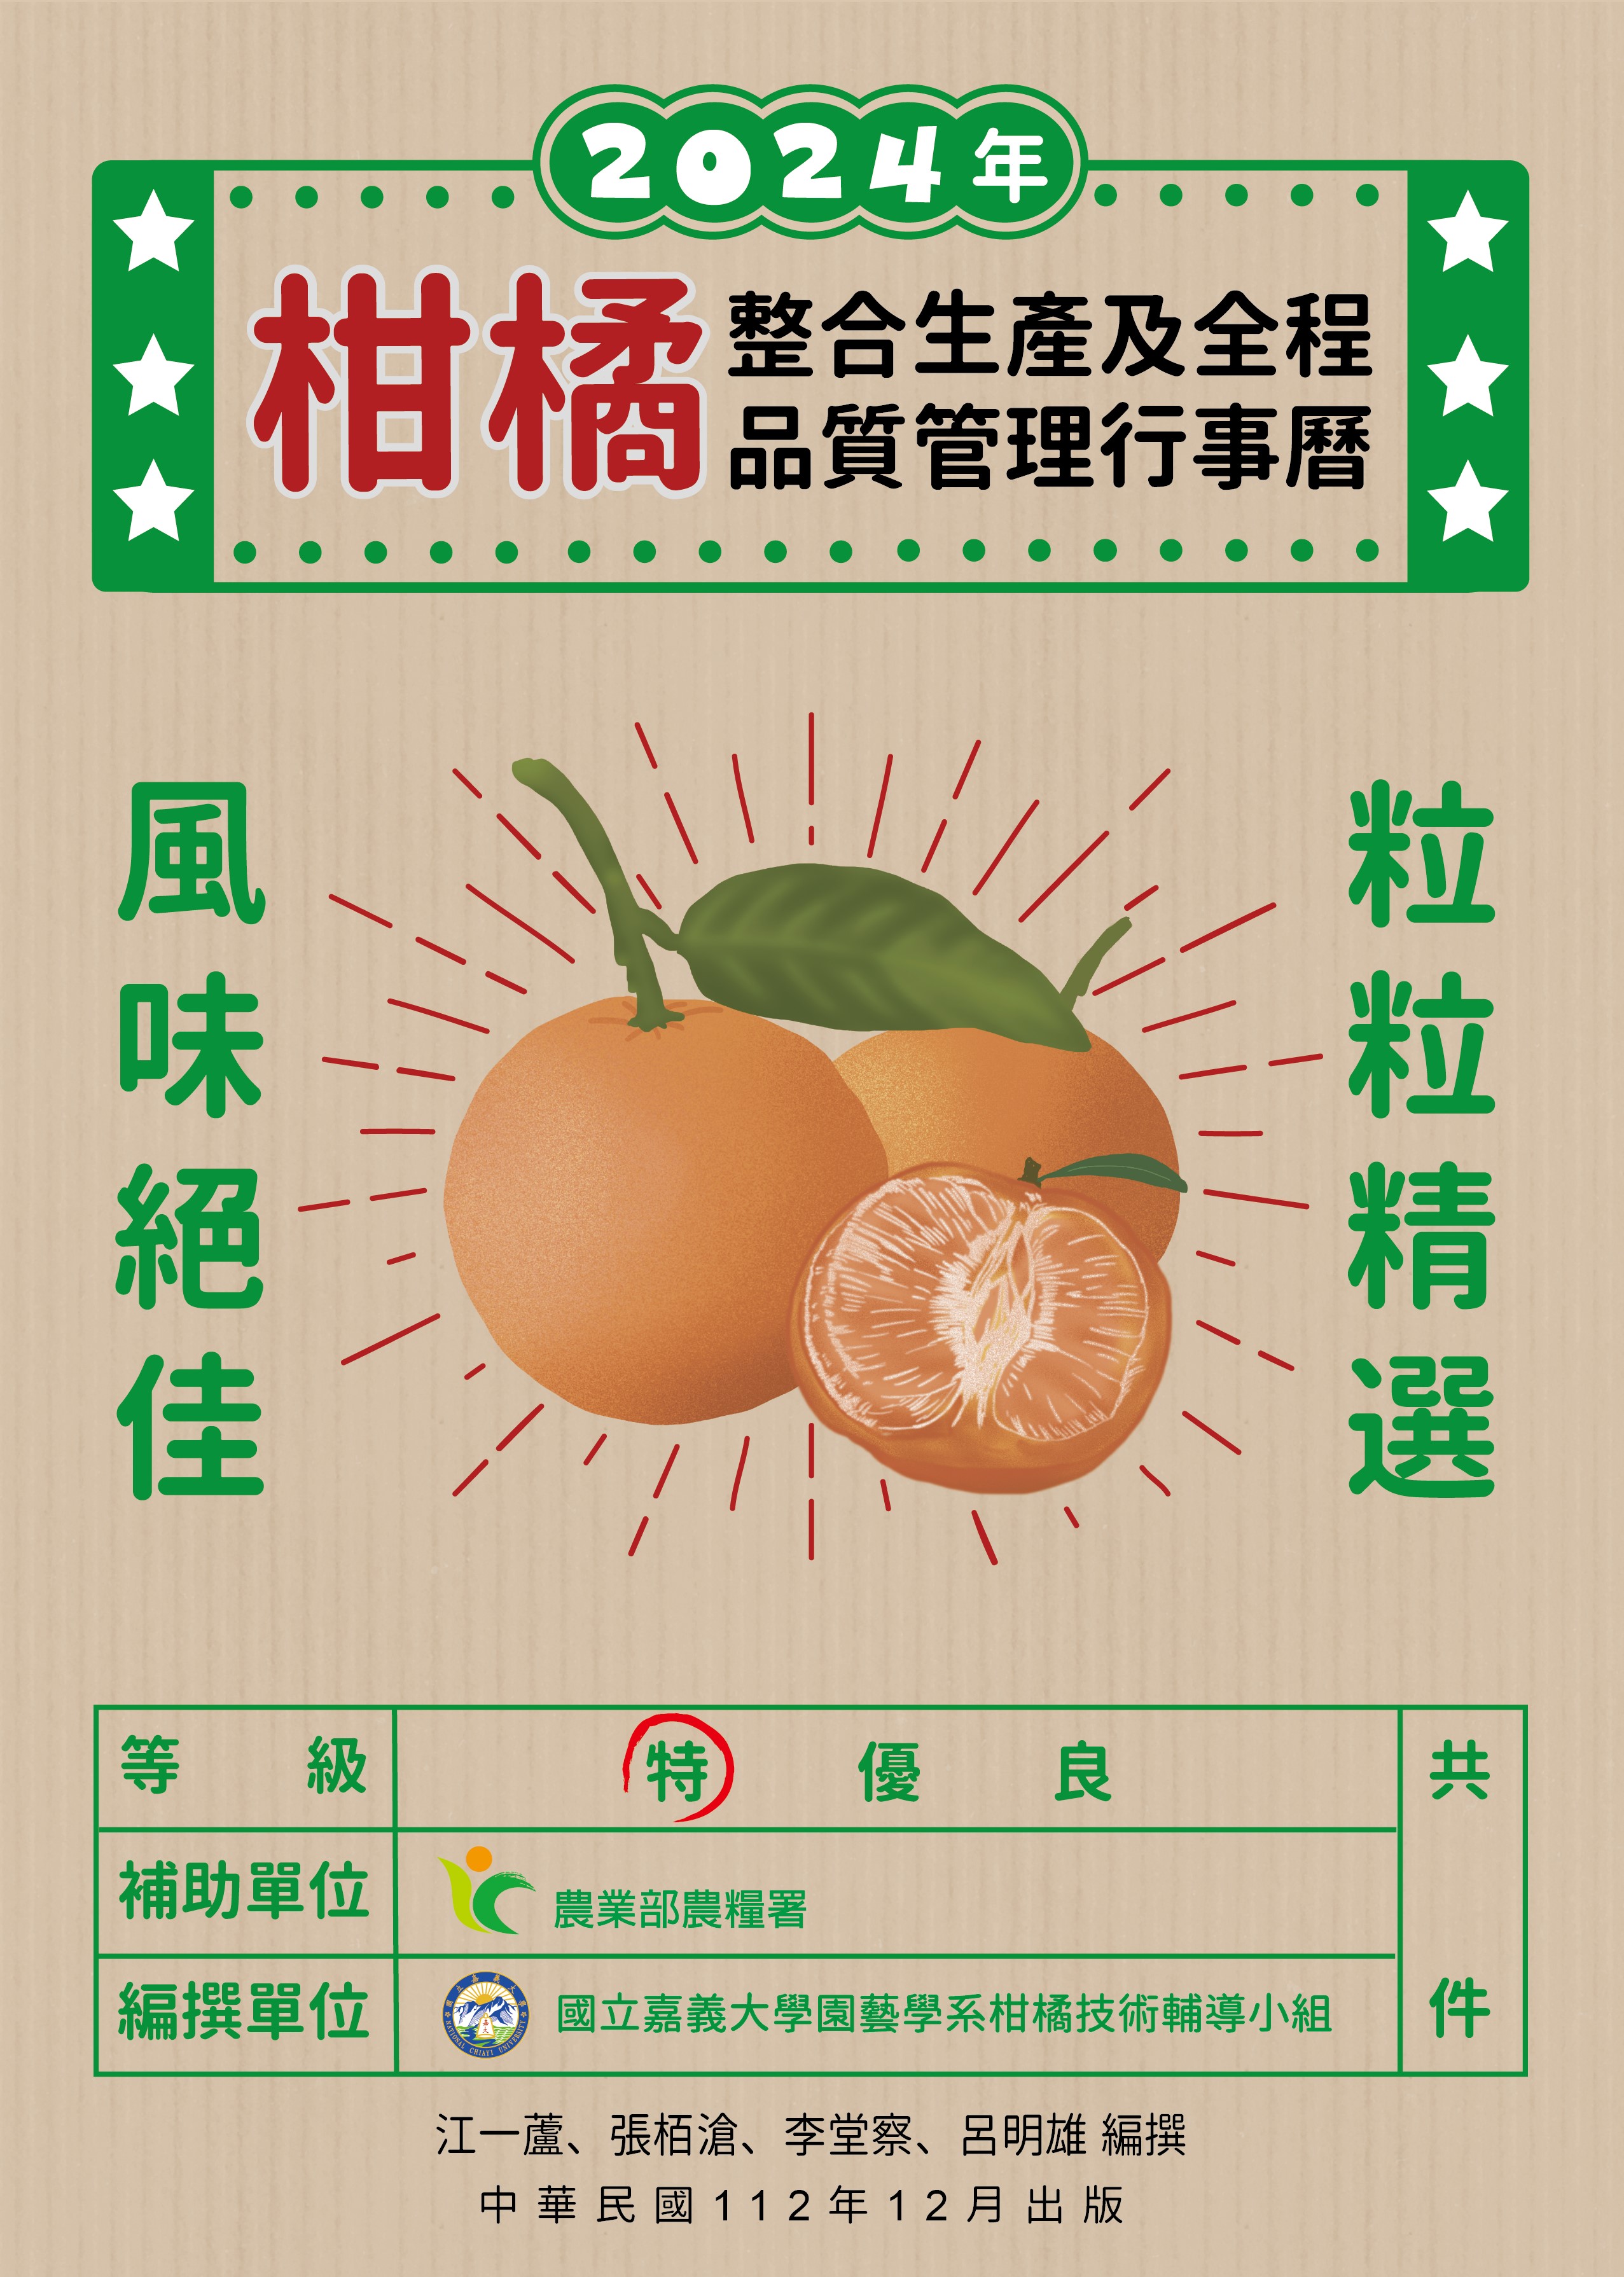 柑橘整合生產及全程品質管理行事曆. 2024年